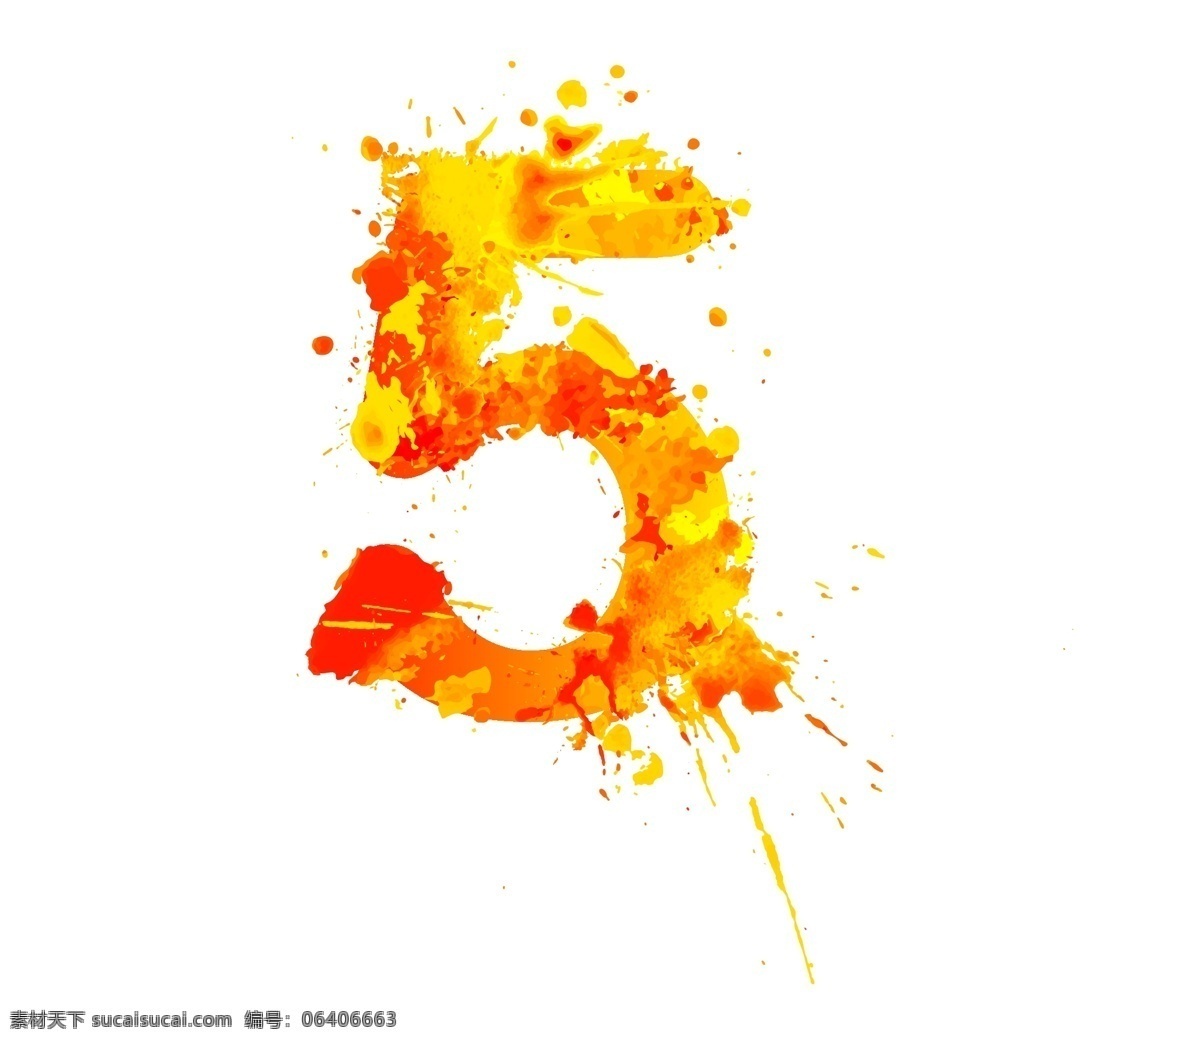 数字5 数字 logo 标志 创意数字 水彩 五周年 标志图标 其他图标